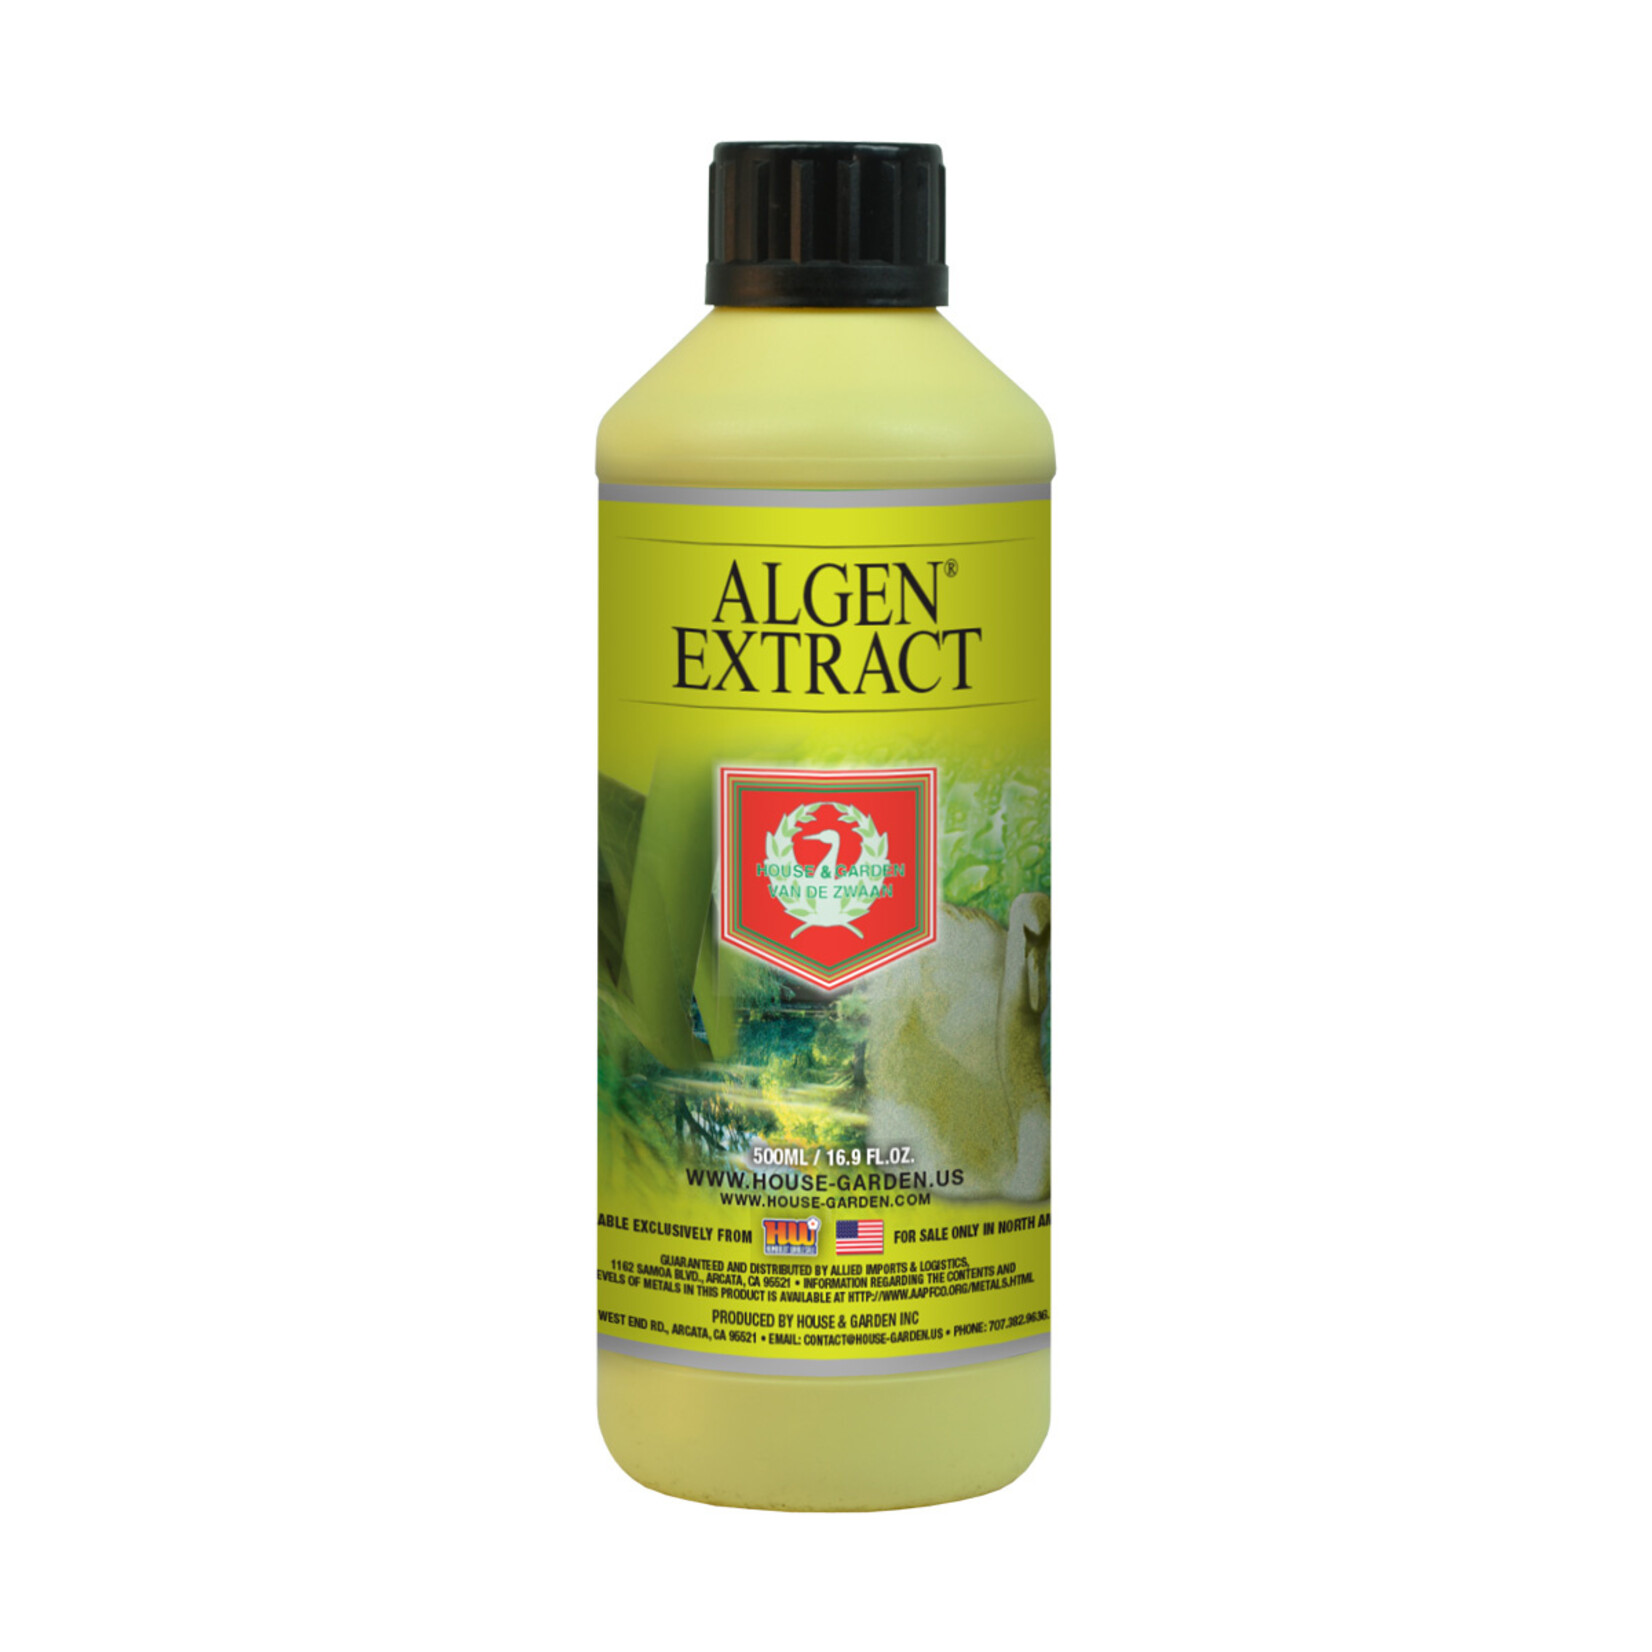 House & Garden House & Garden Algen Extract 500ml